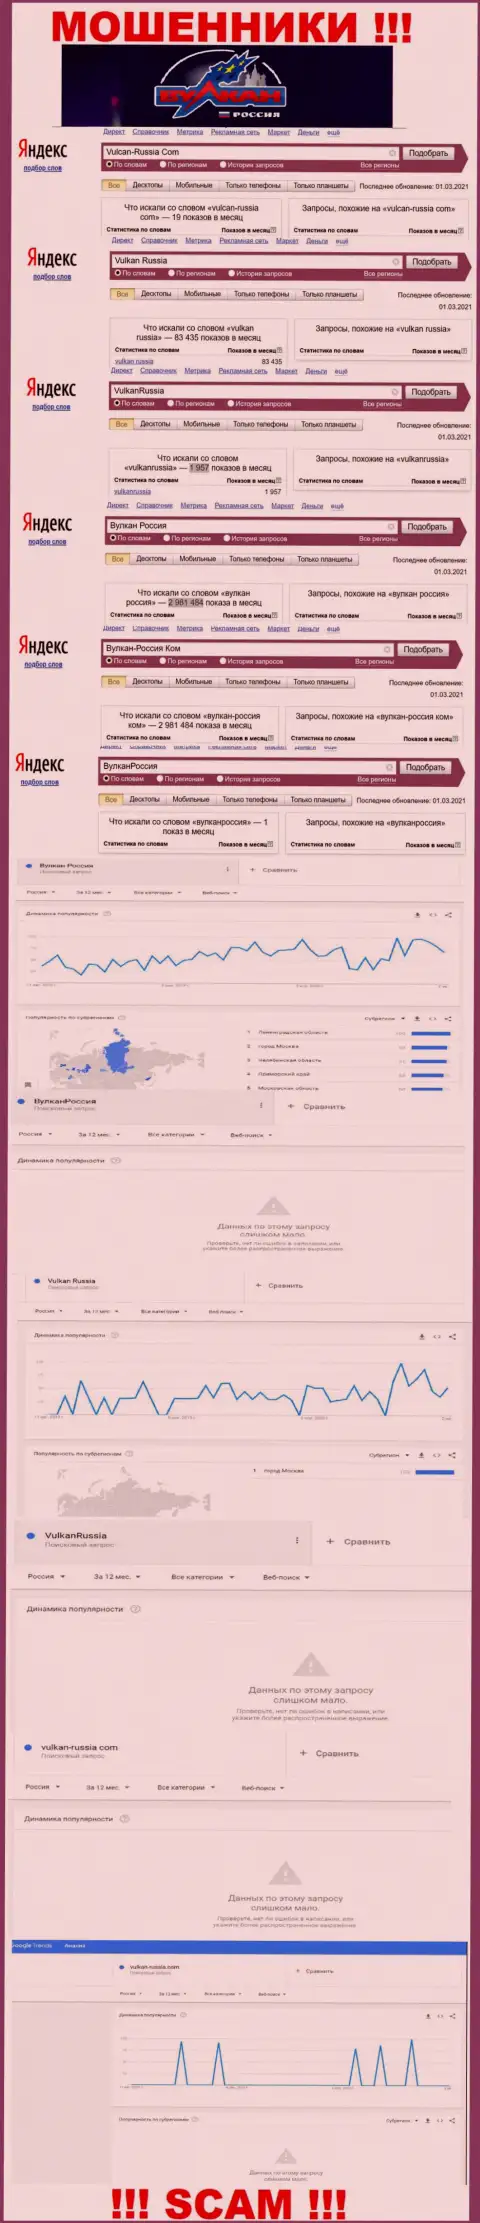 Статистические показатели суммарного числа обзоров сведений о обманщиках Вулкан Россия в интернет сети